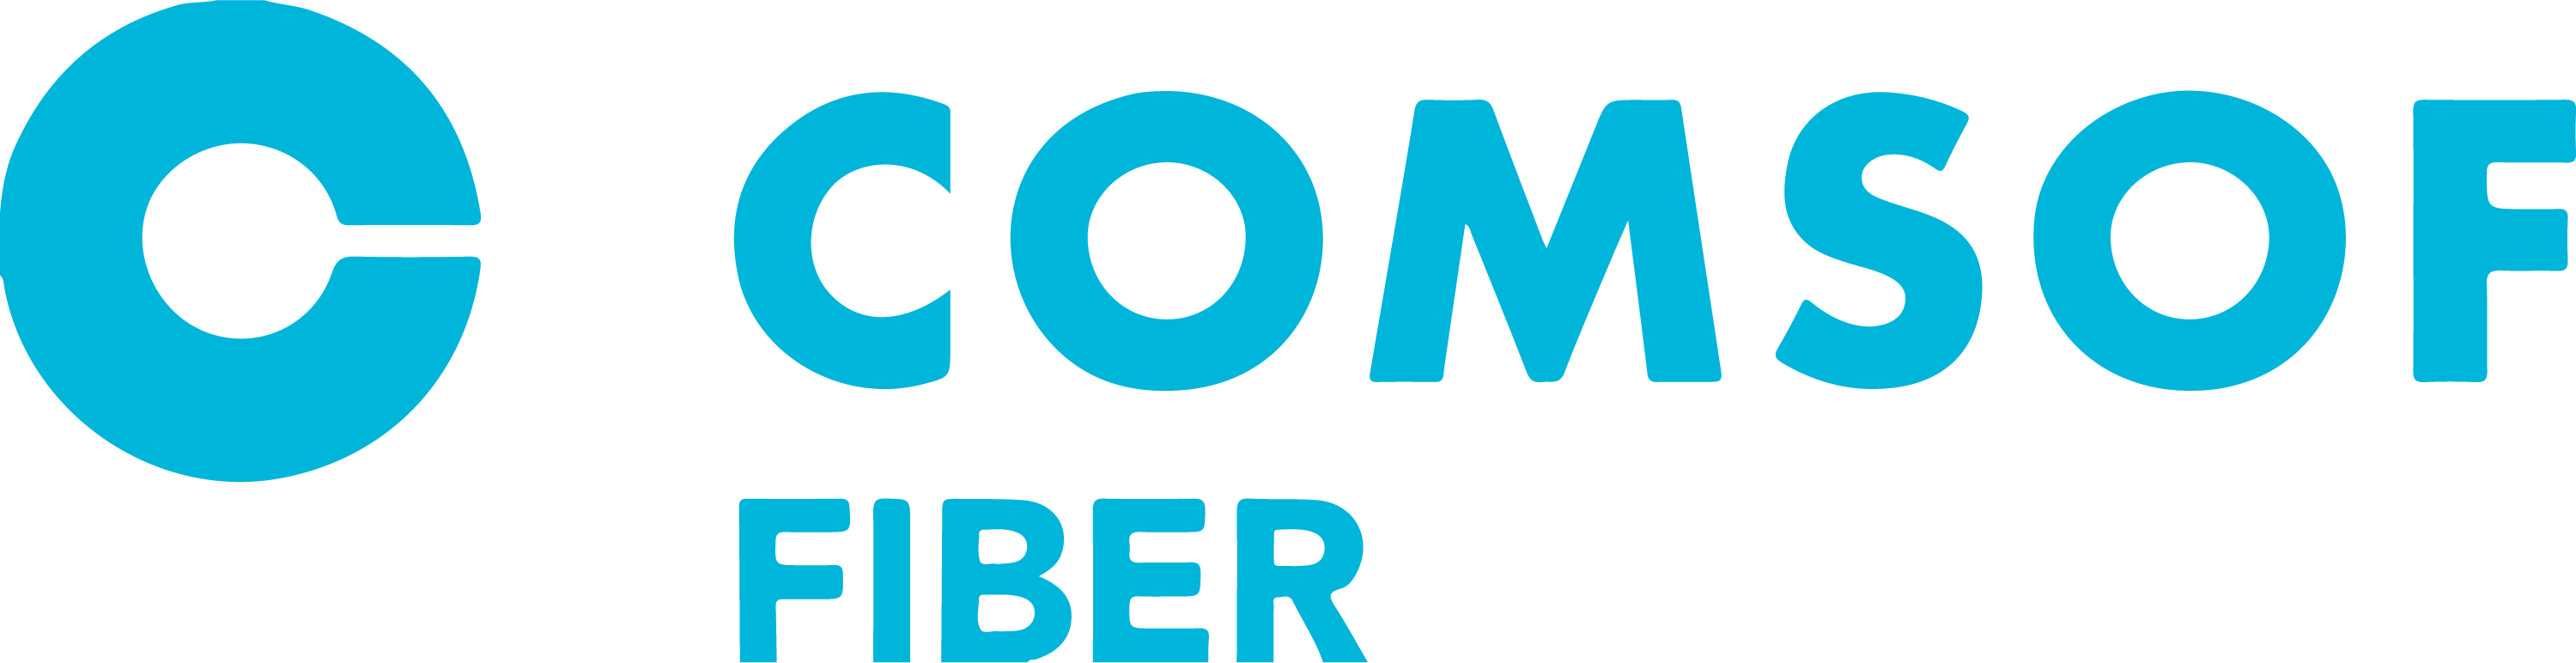 Comso-Fiber_logo-01